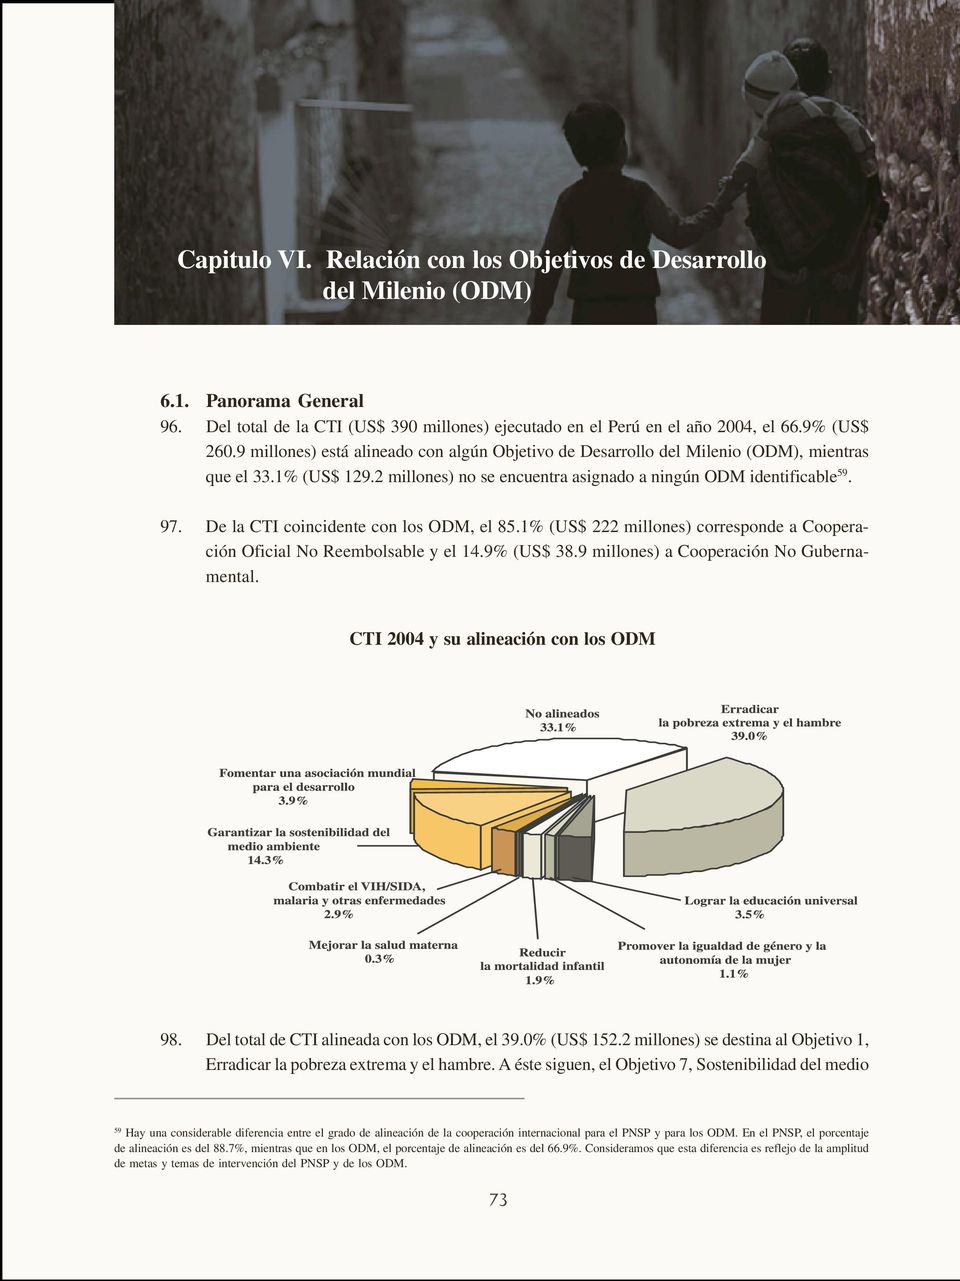 De la CTI coincidente con los ODM, el 85.1% (US$ 222 millones) corresponde a Cooperación Oficial No Reembolsable y el 14.9% (US$ 38.9 millones) a Cooperación No Gubernamental.